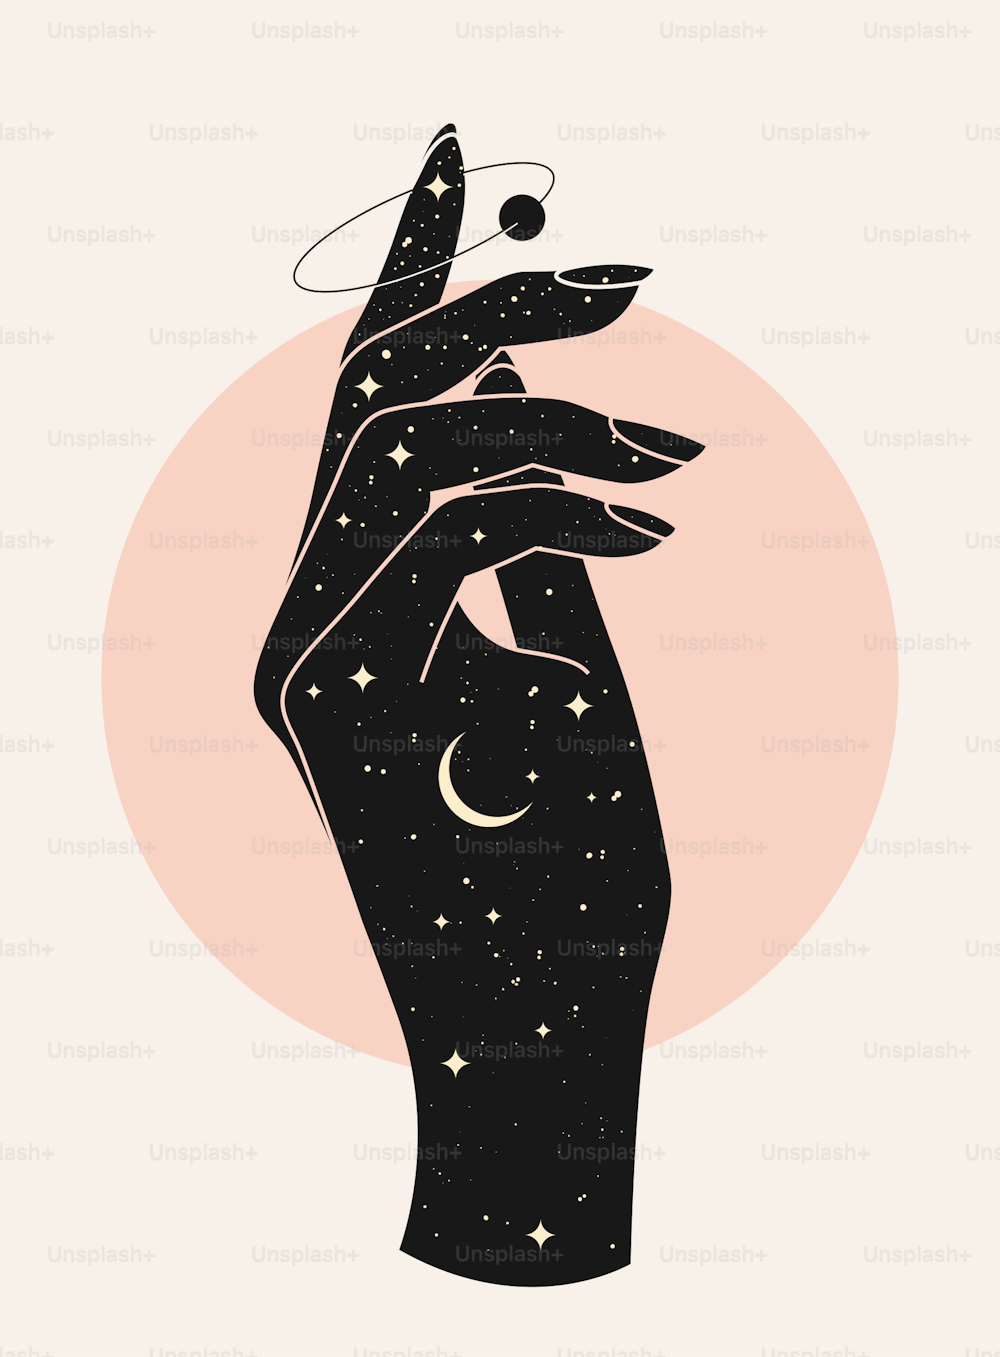 Belle silhouette de main de femme mystique avec texture de ciel étoilé nocturne sur fond clair. Illustration du vecteur eps 10